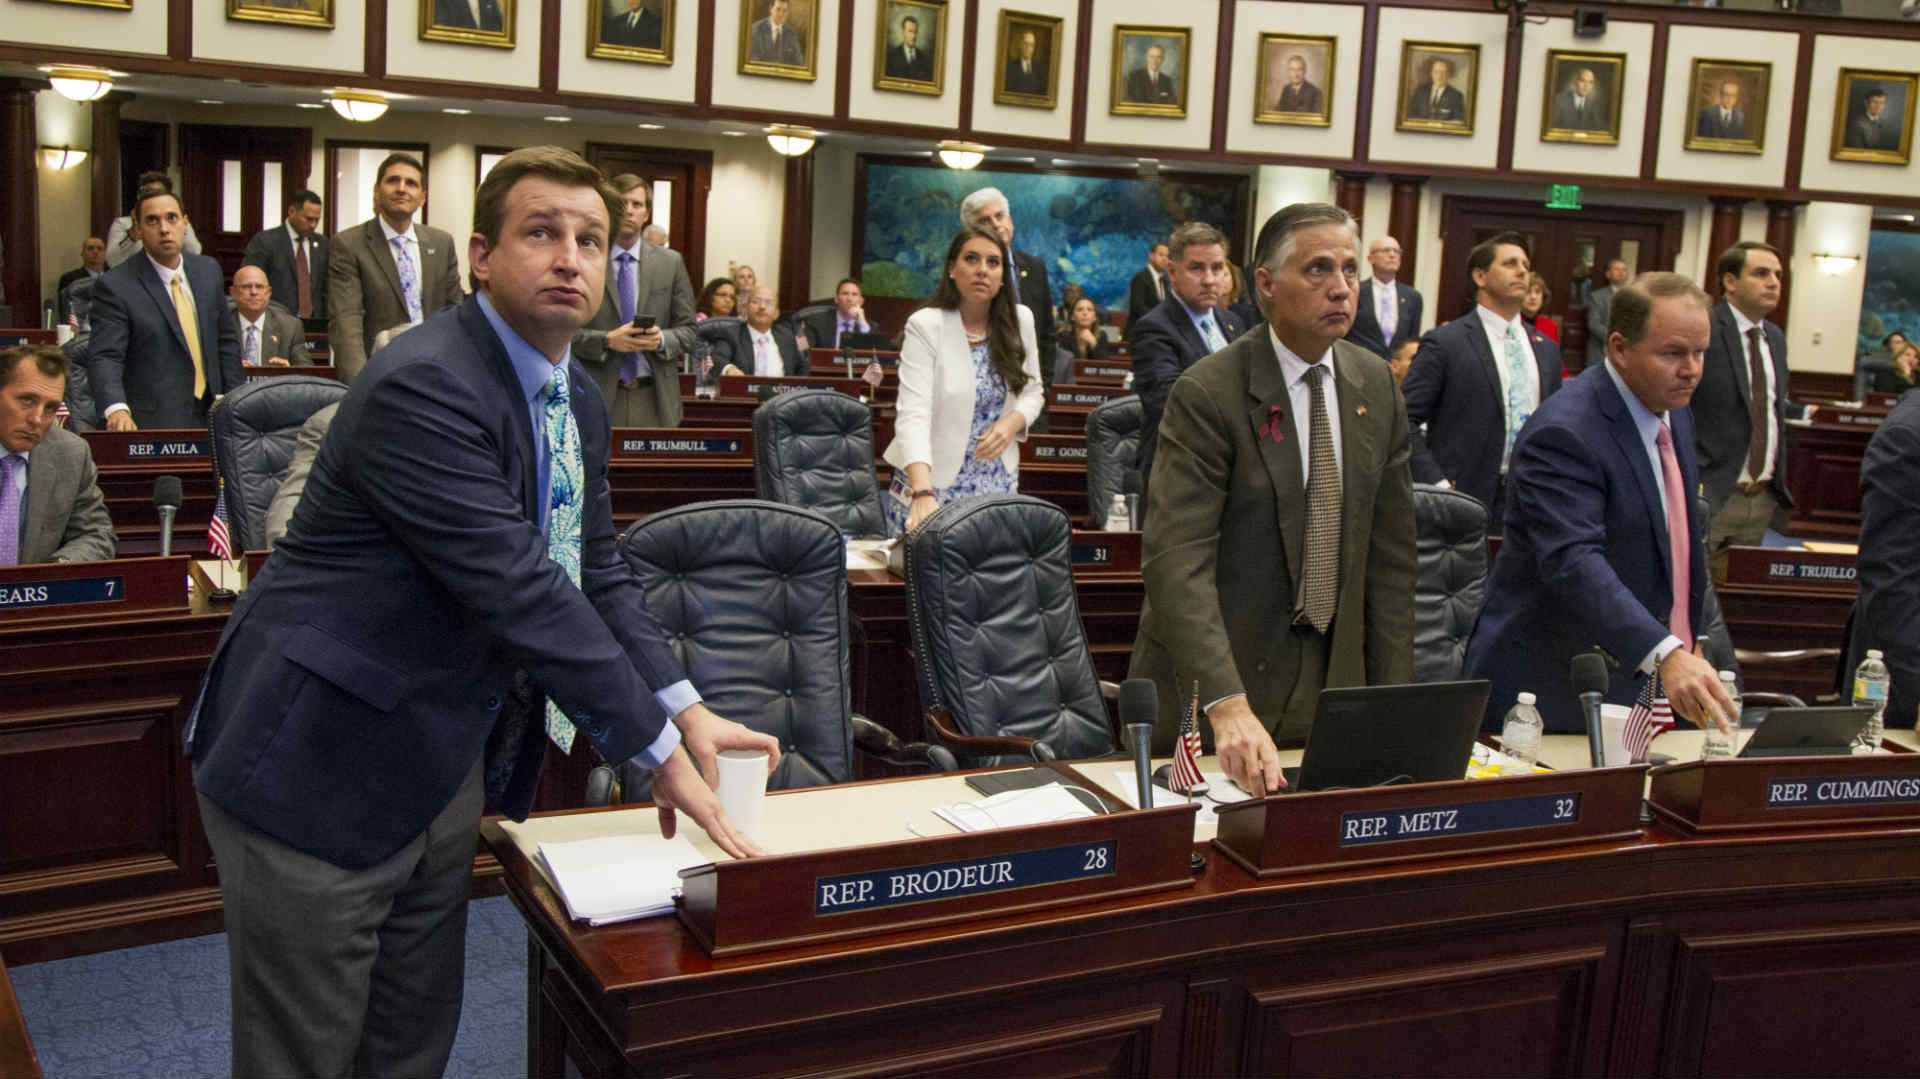 Los legisladores de Florida aprueban una ley para armar a algunos profesores